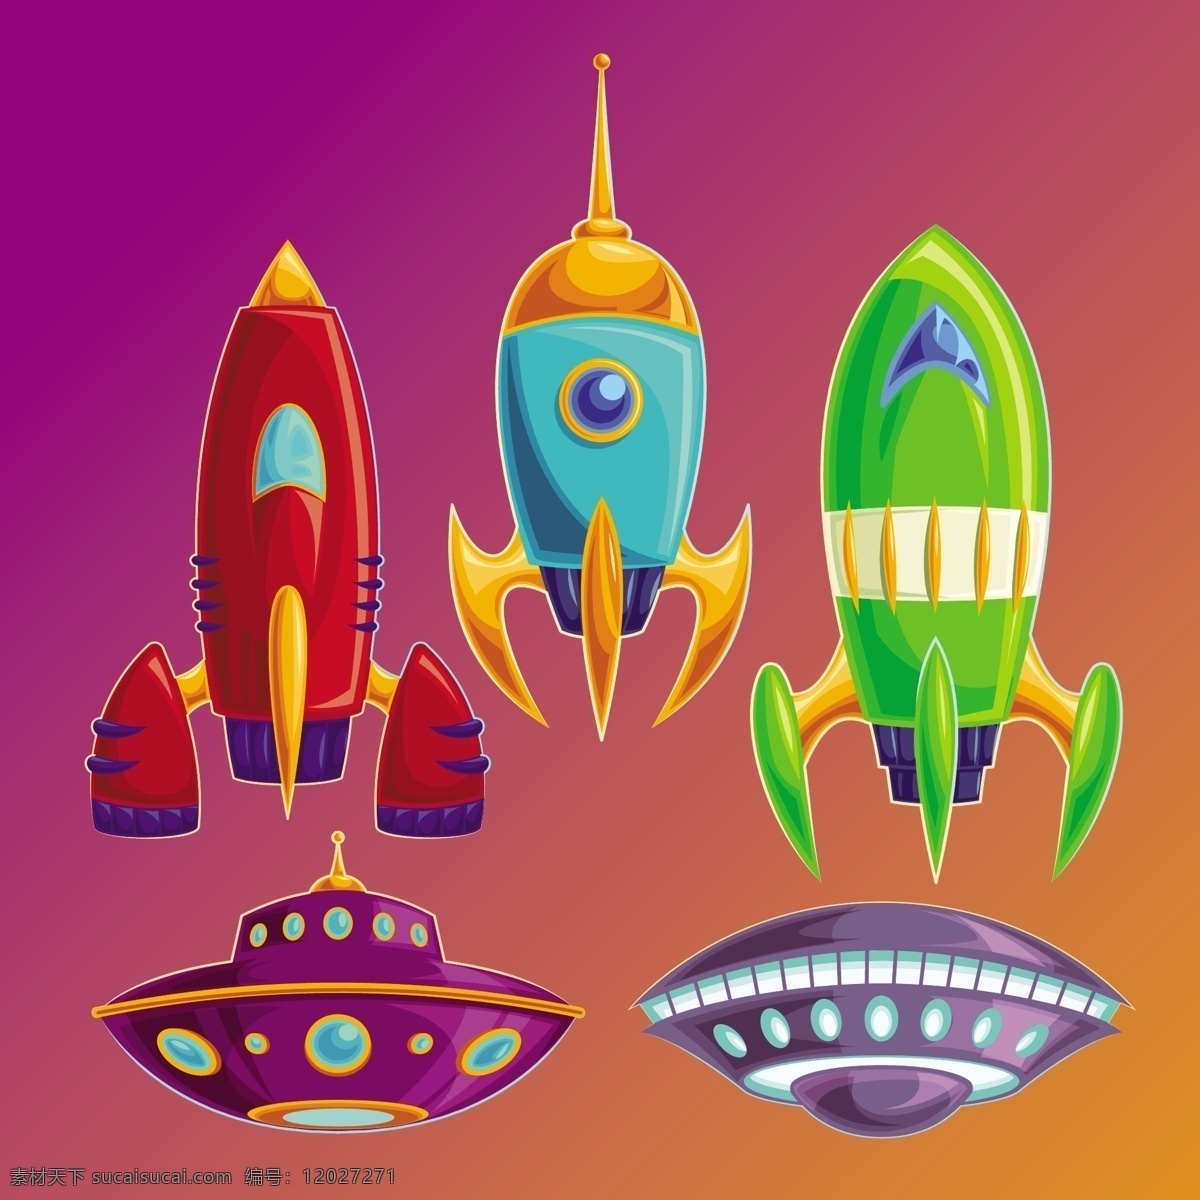 设置 矢量 有趣 宇宙飞船 不明飞行物 旅行 技术 图标 卡通 天空 漫画 飞机 科学 可爱 空间 艺术 色彩 涂鸦 形状 船 火箭 速度 团体 机器